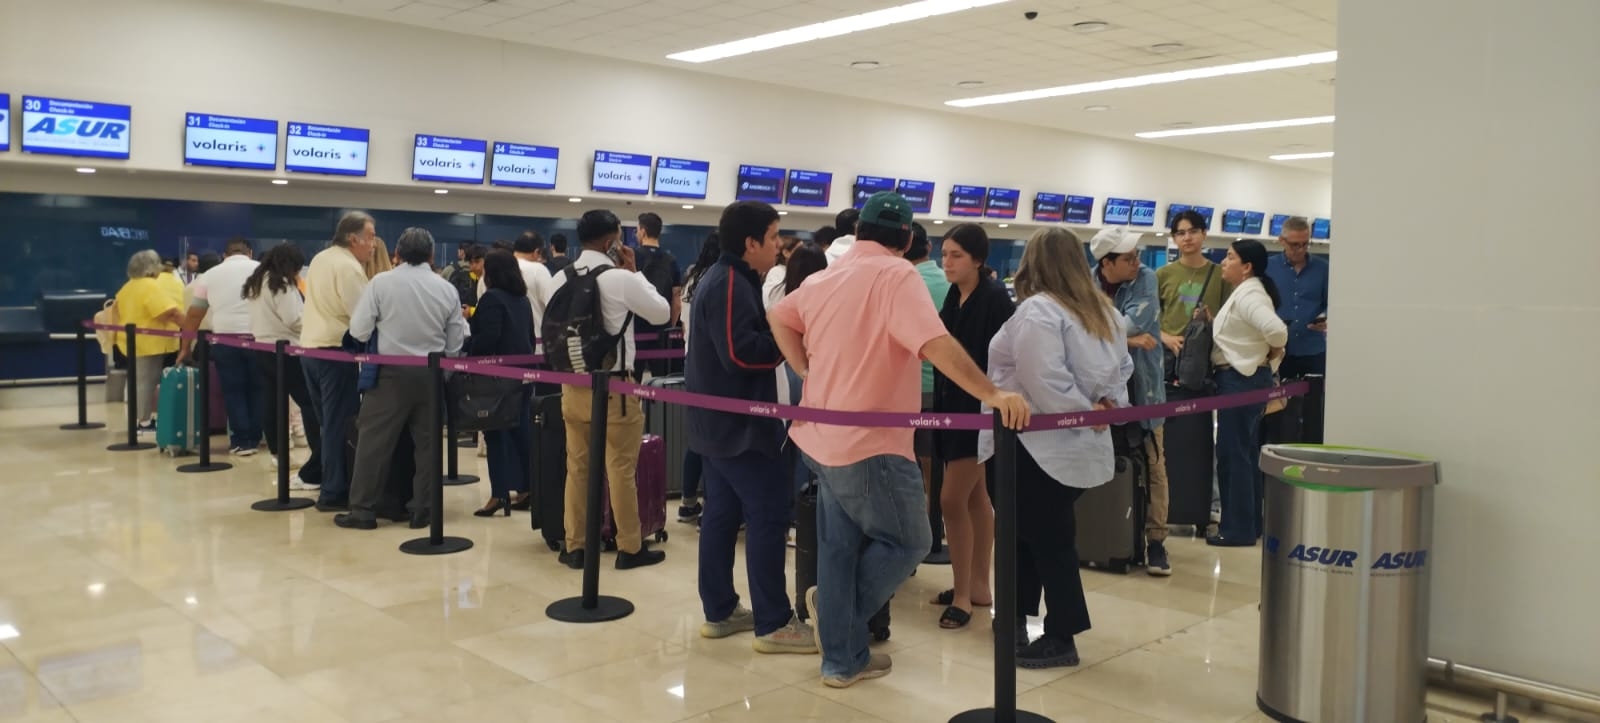 El aeropuerto de Mérida mantiene buena afluencia de viajeros